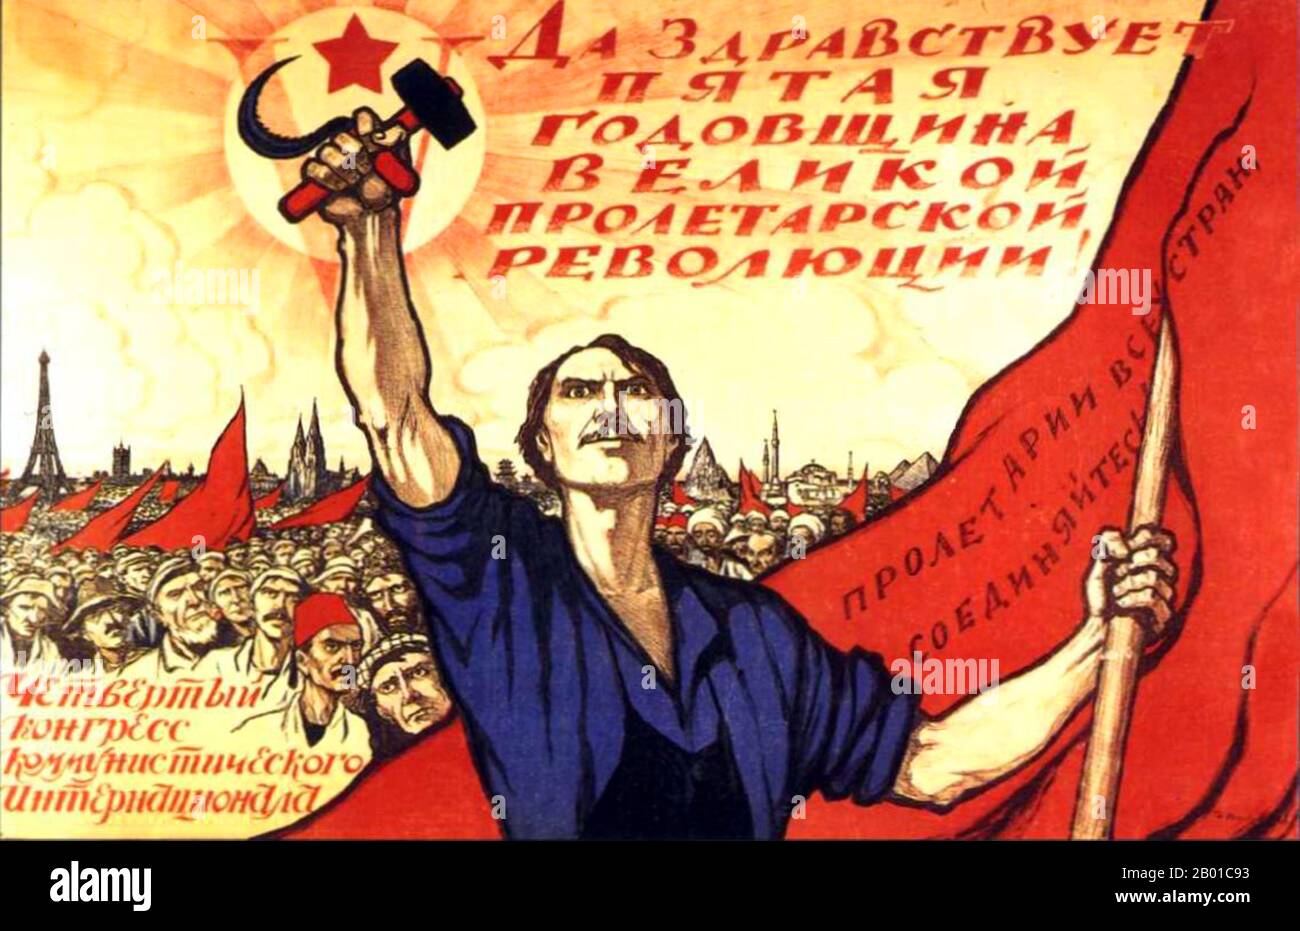 Russia/URSS: "Viva il 5th° anniversario della Grande Rivoluzione proletaria di ottobre!" Poster rivoluzionario dell'era sovietica di Ivan Vasilyevich Simakov (1877-1925) che mostra i lavoratori del mondo che si riuniscono con l'Unione Sovietica in prima linea, 1922. Il realismo socialista è uno stile di arte realistica che è stato sviluppato nell'Unione Sovietica ed è diventato uno stile dominante in altri paesi comunisti. Il realismo socialista è uno stile teleologicamente orientato che ha il suo scopo di promuovere gli obiettivi del socialismo e del comunismo. Anche se collegato, non dovrebbe essere confuso con realismo sociale. Foto Stock